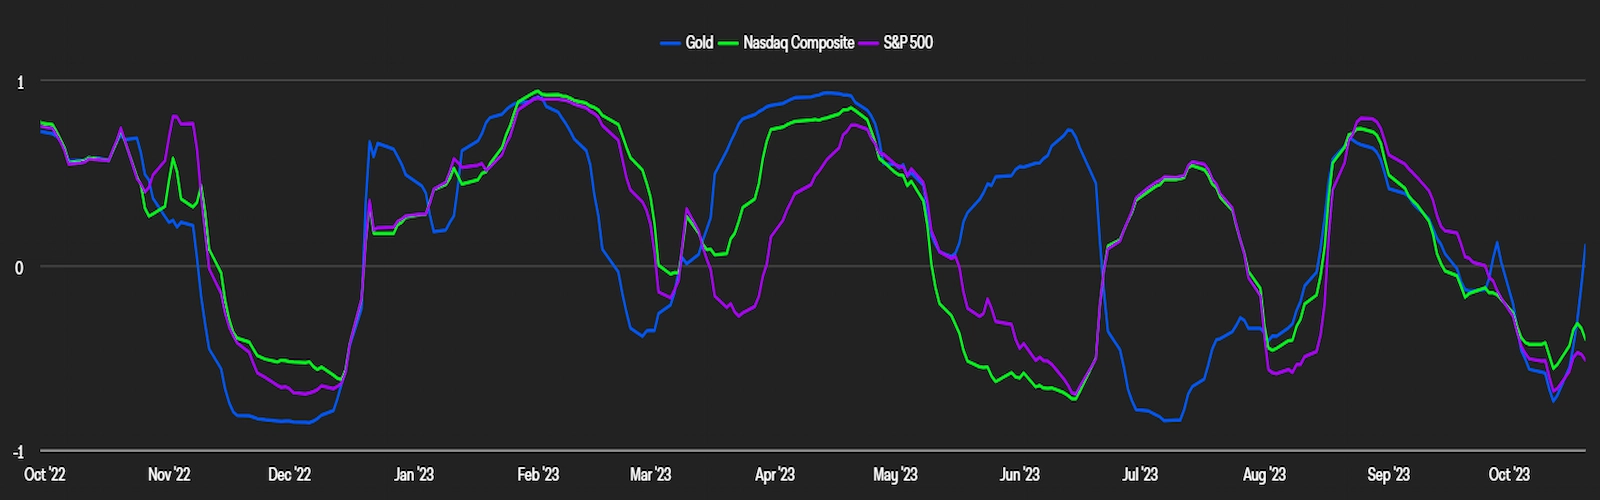 BTC 30-day correlation with Gold, NASDAQ Composite, and S&P 500. 